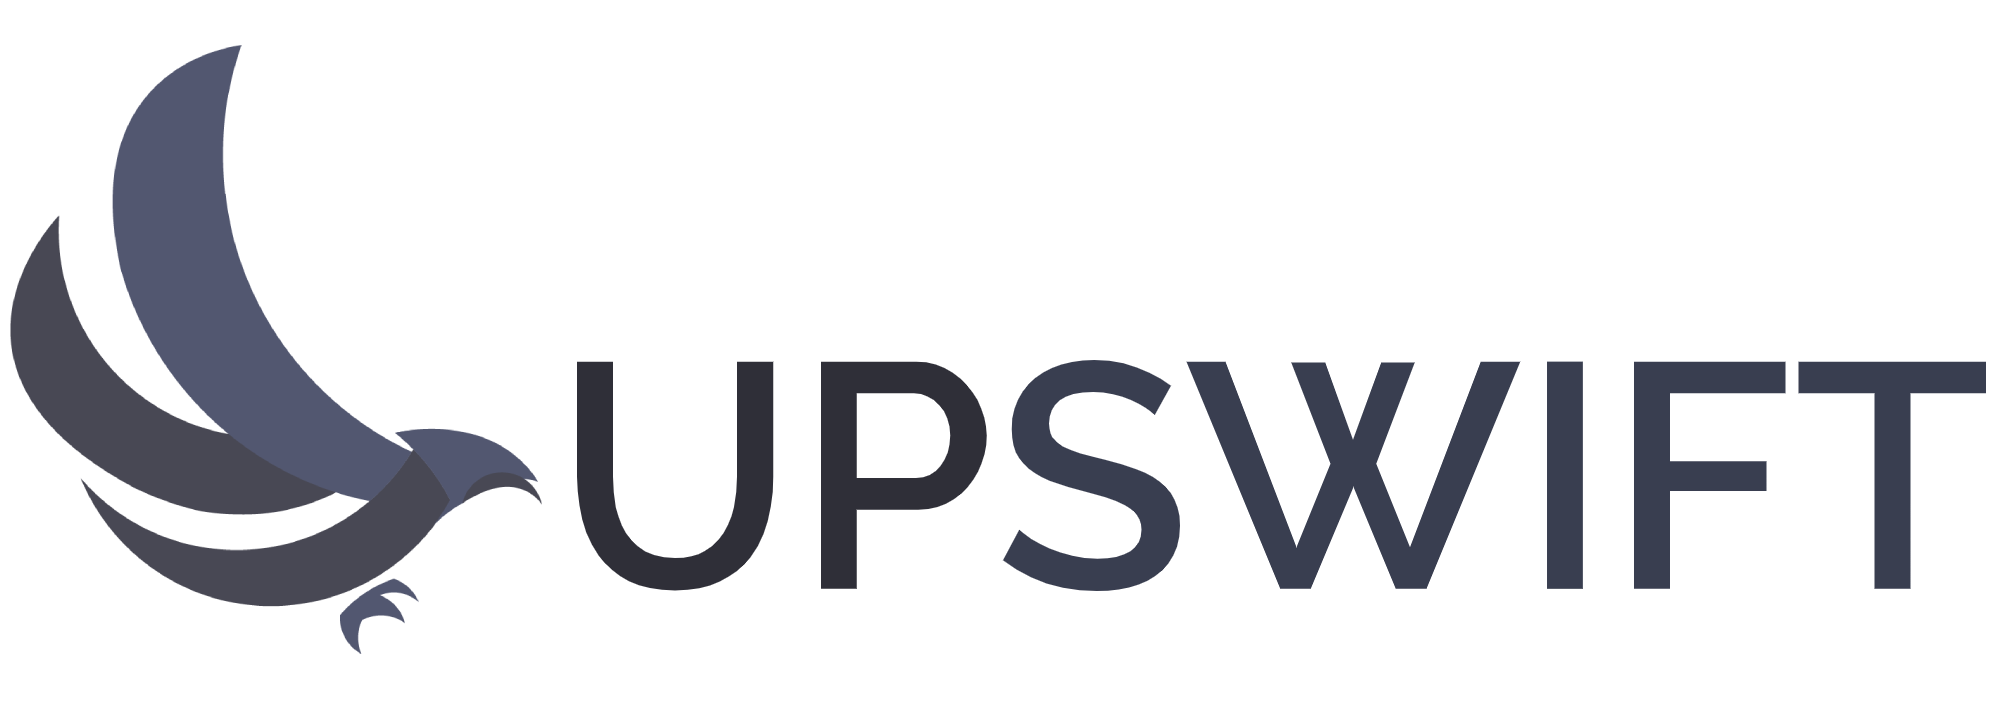 Upswift logo